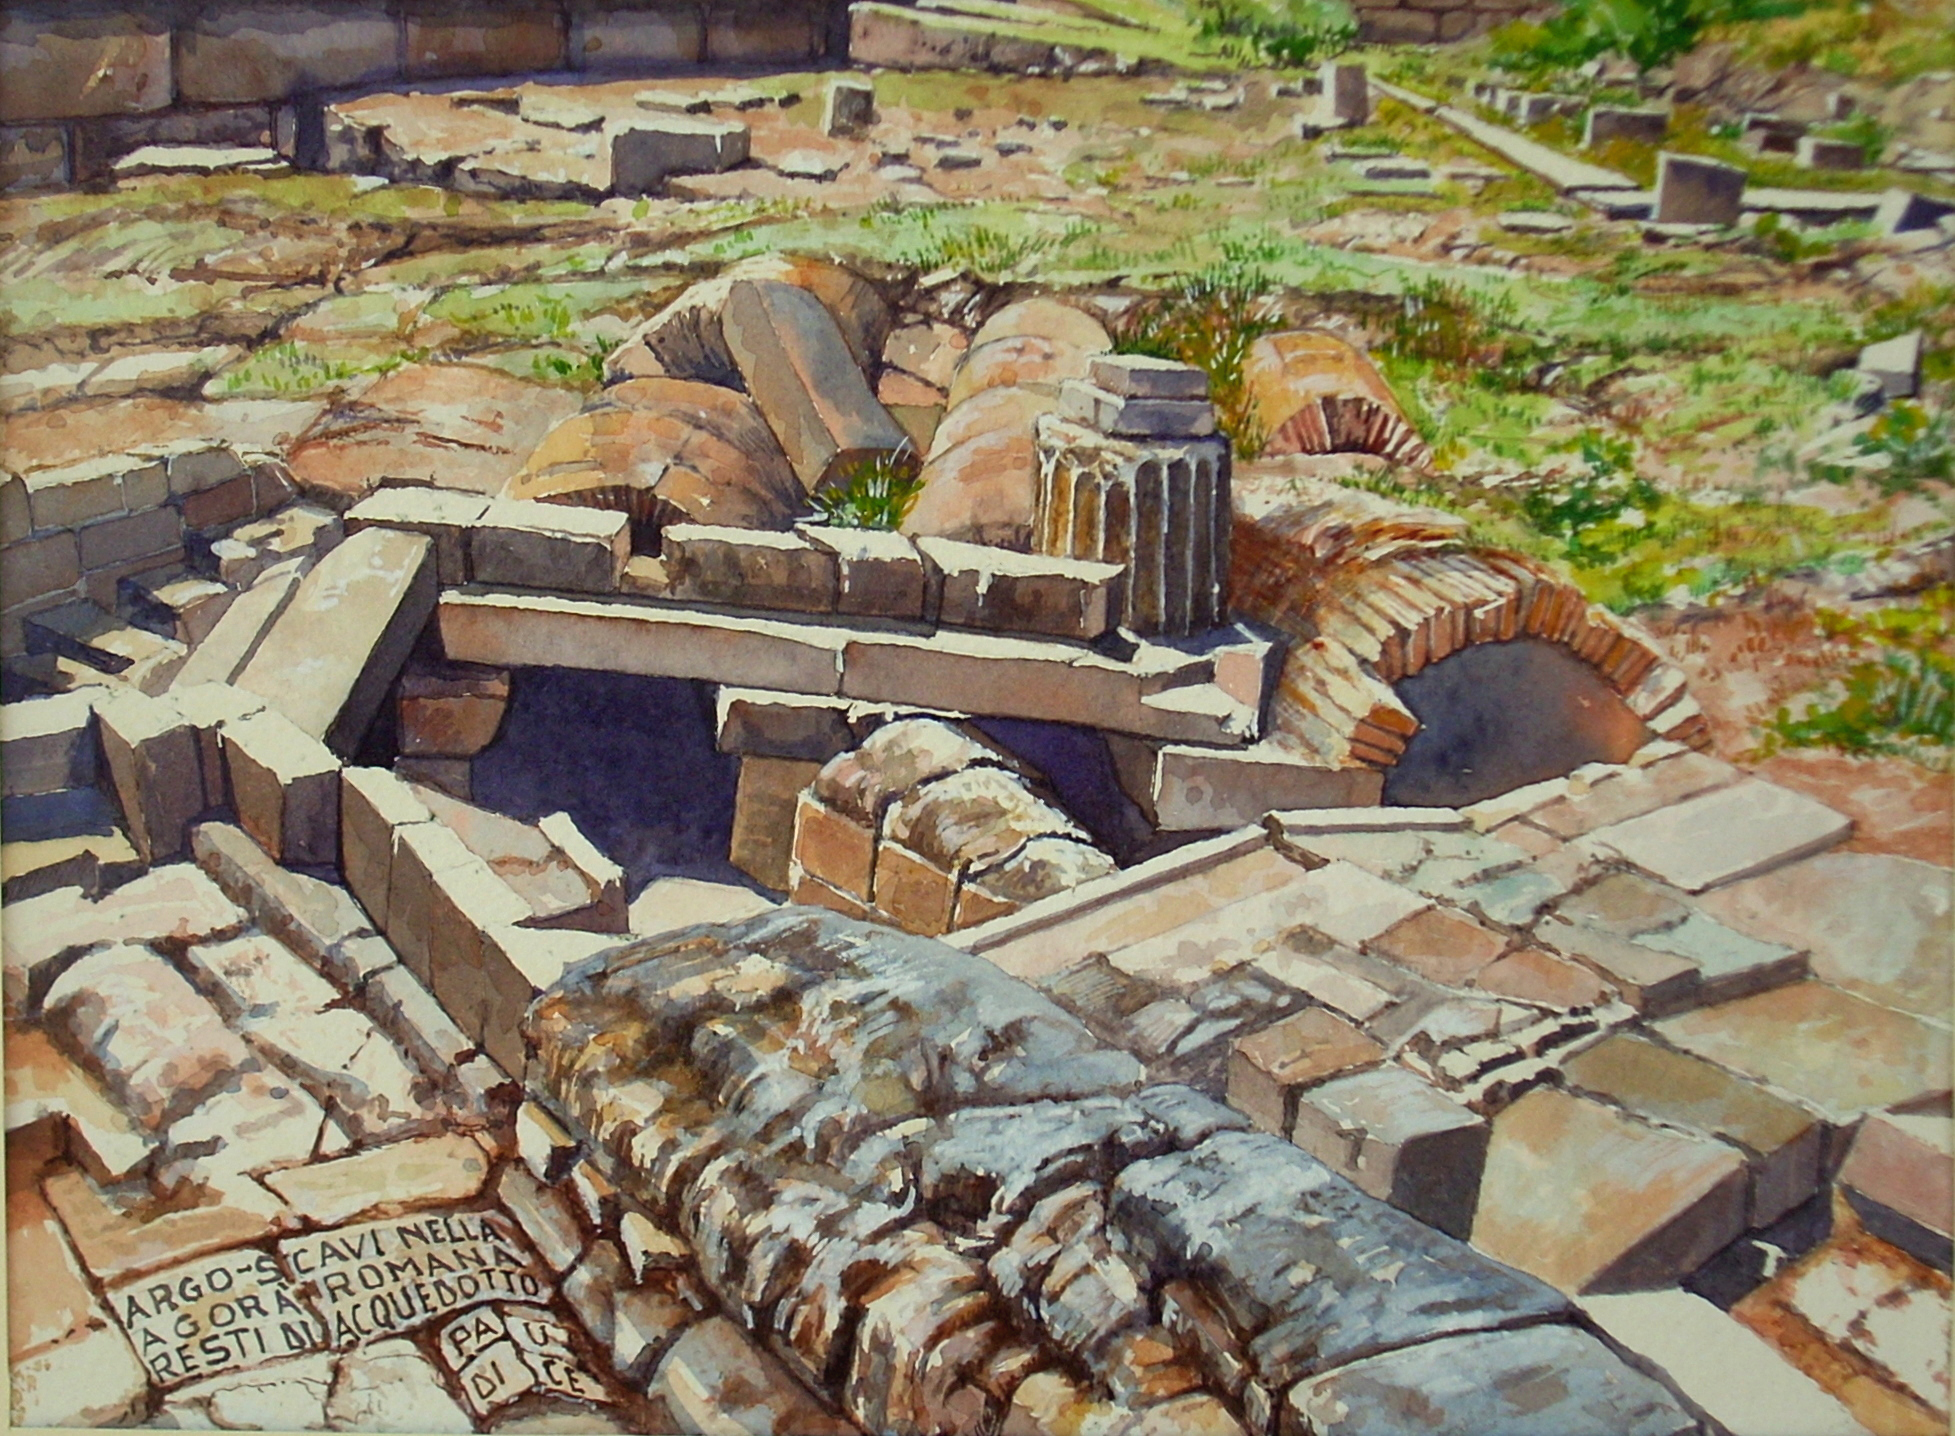 Paudice, Argo – Scavi nell’agorà romana, resti di acquedotto